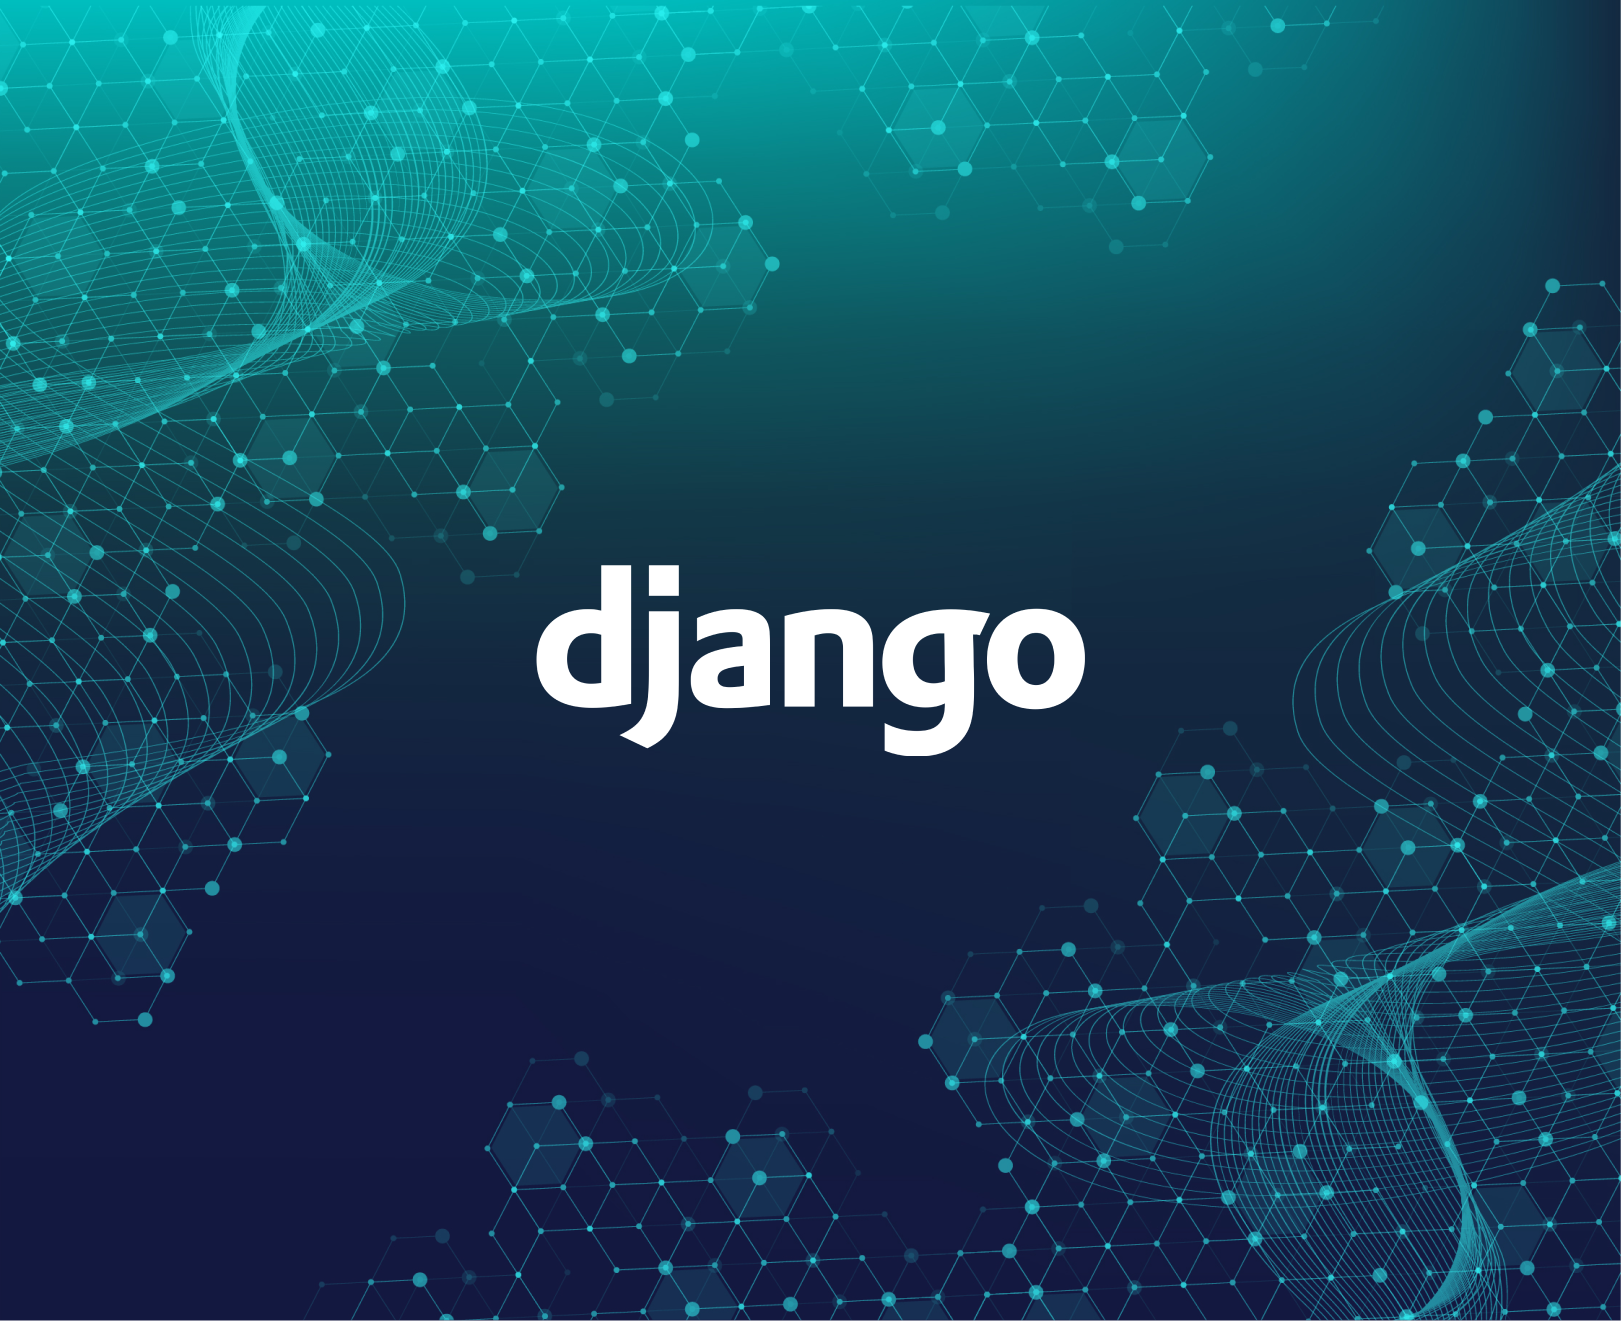 Django application monitoring